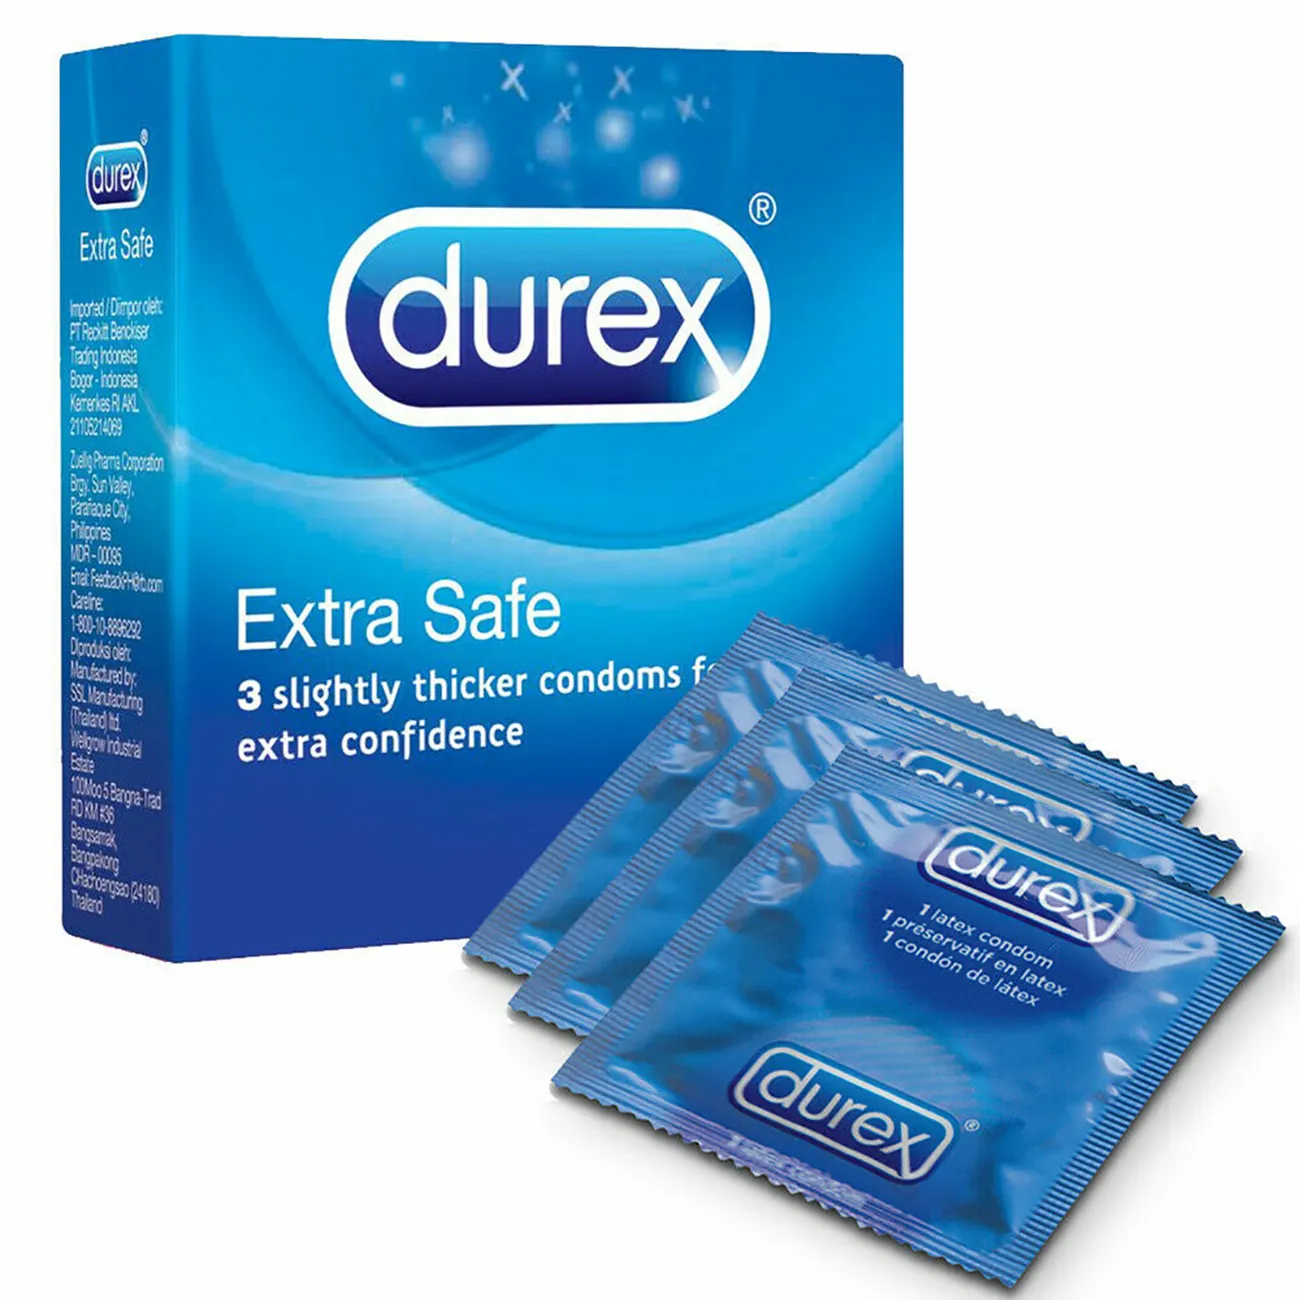 Super Ultra Thin Condoms for Trust Brand Durex Latex Condoms